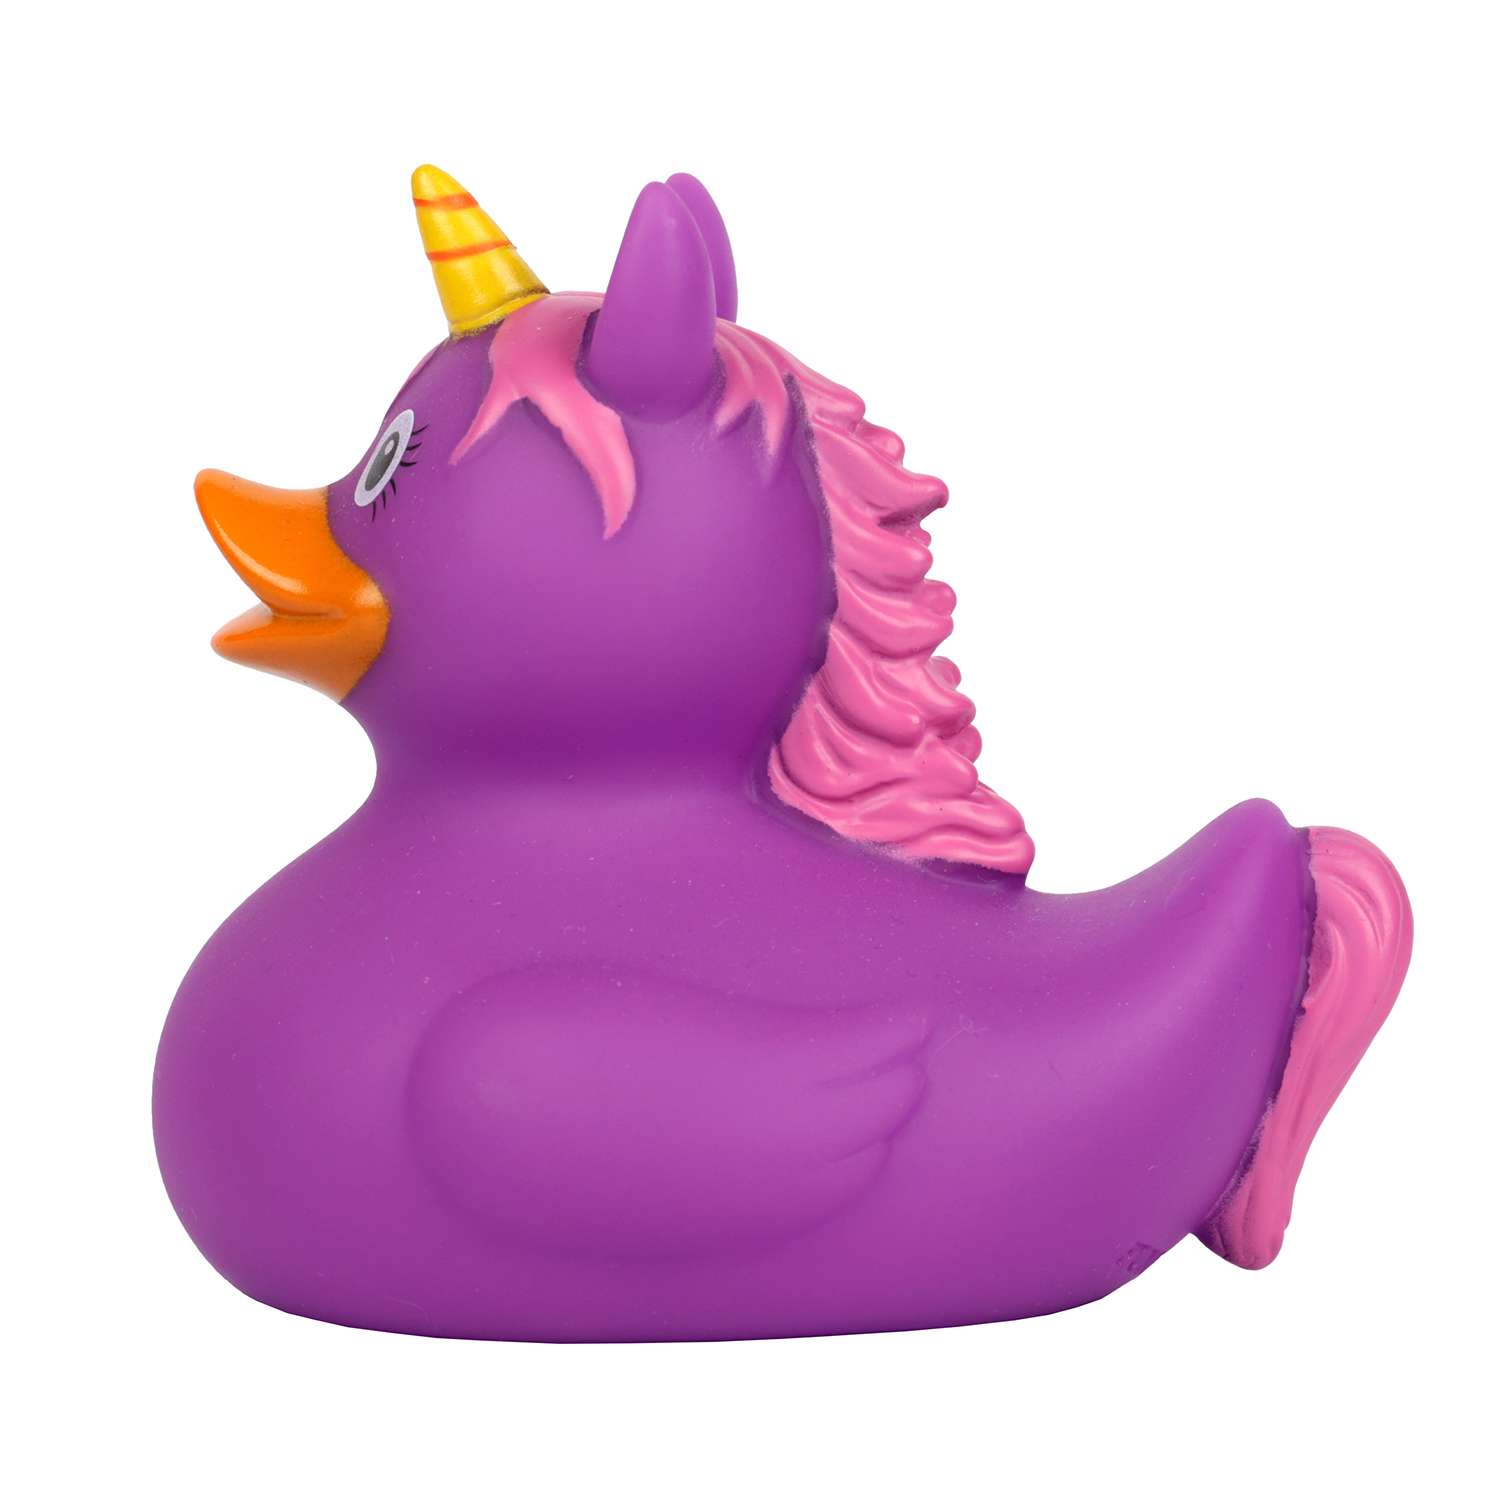 Игрушка для ванны сувенир Funny ducks Единорог пурпурный уточка 2090 - фото 4